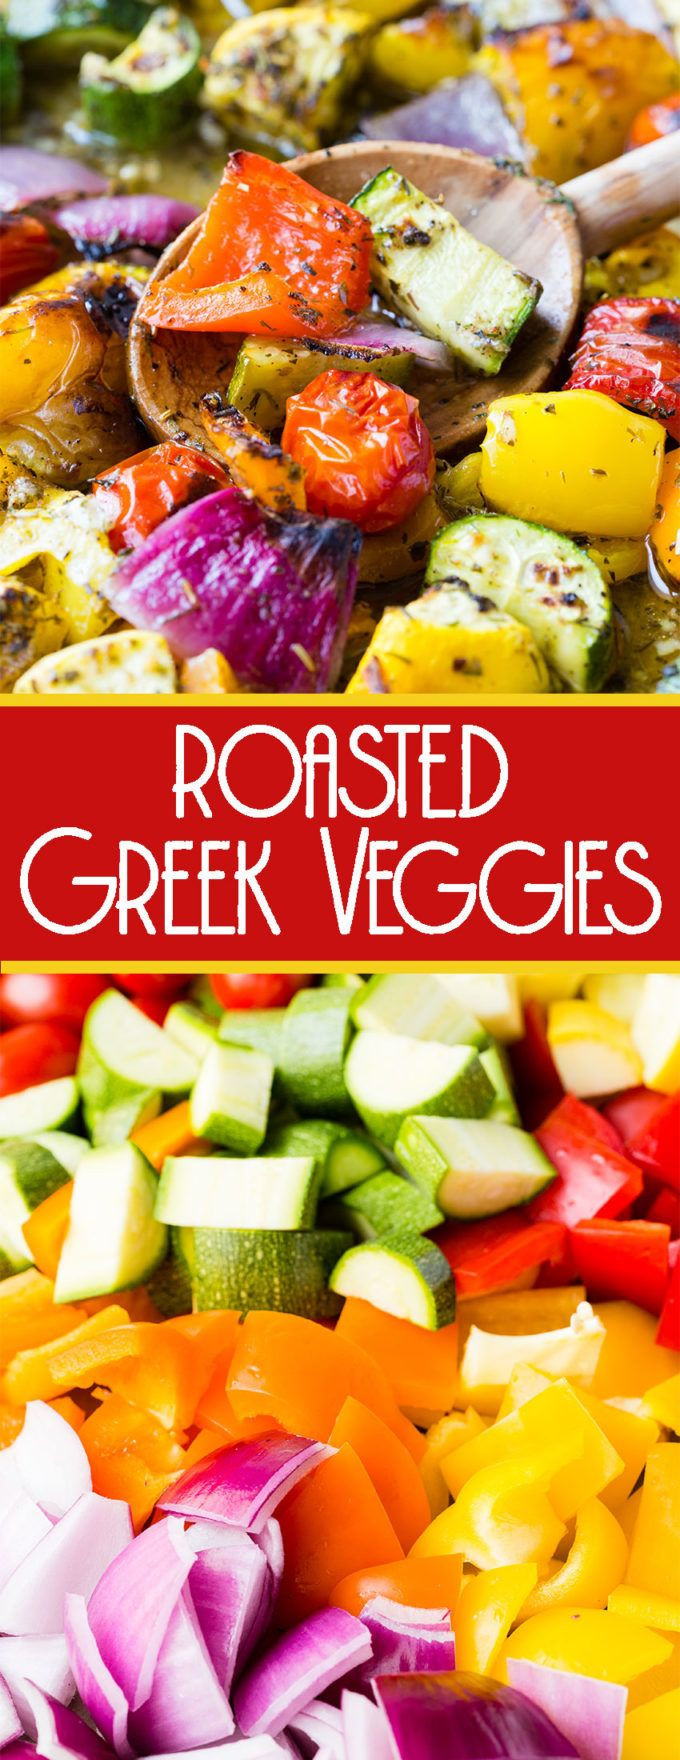 Greek Vegetables Side Dishes
 Roasted Greek Ve ables Recipe